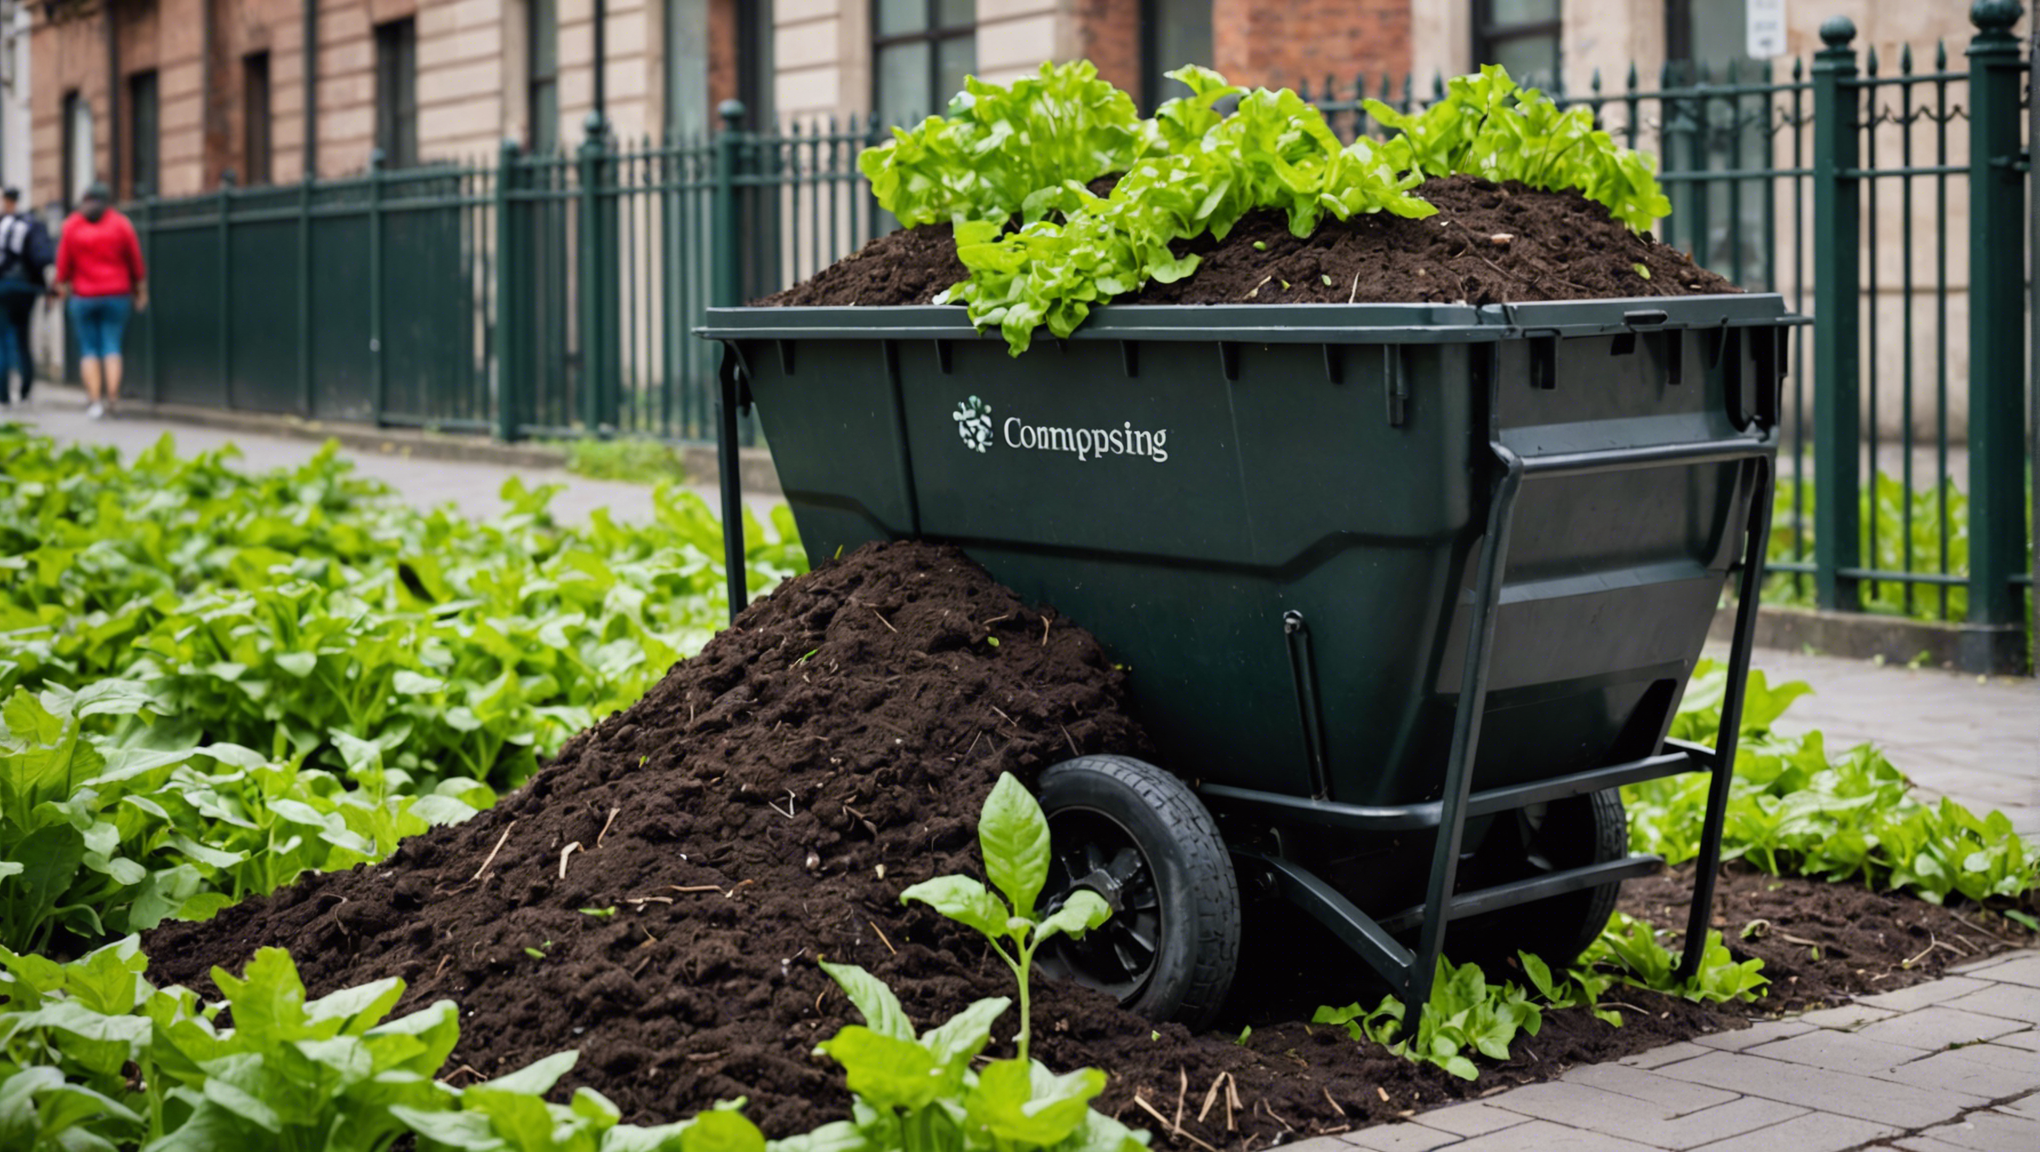 découvrez comment intégrer facilement le compostage dans votre vie quotidienne en ville et contribuer à une démarche écoresponsable.